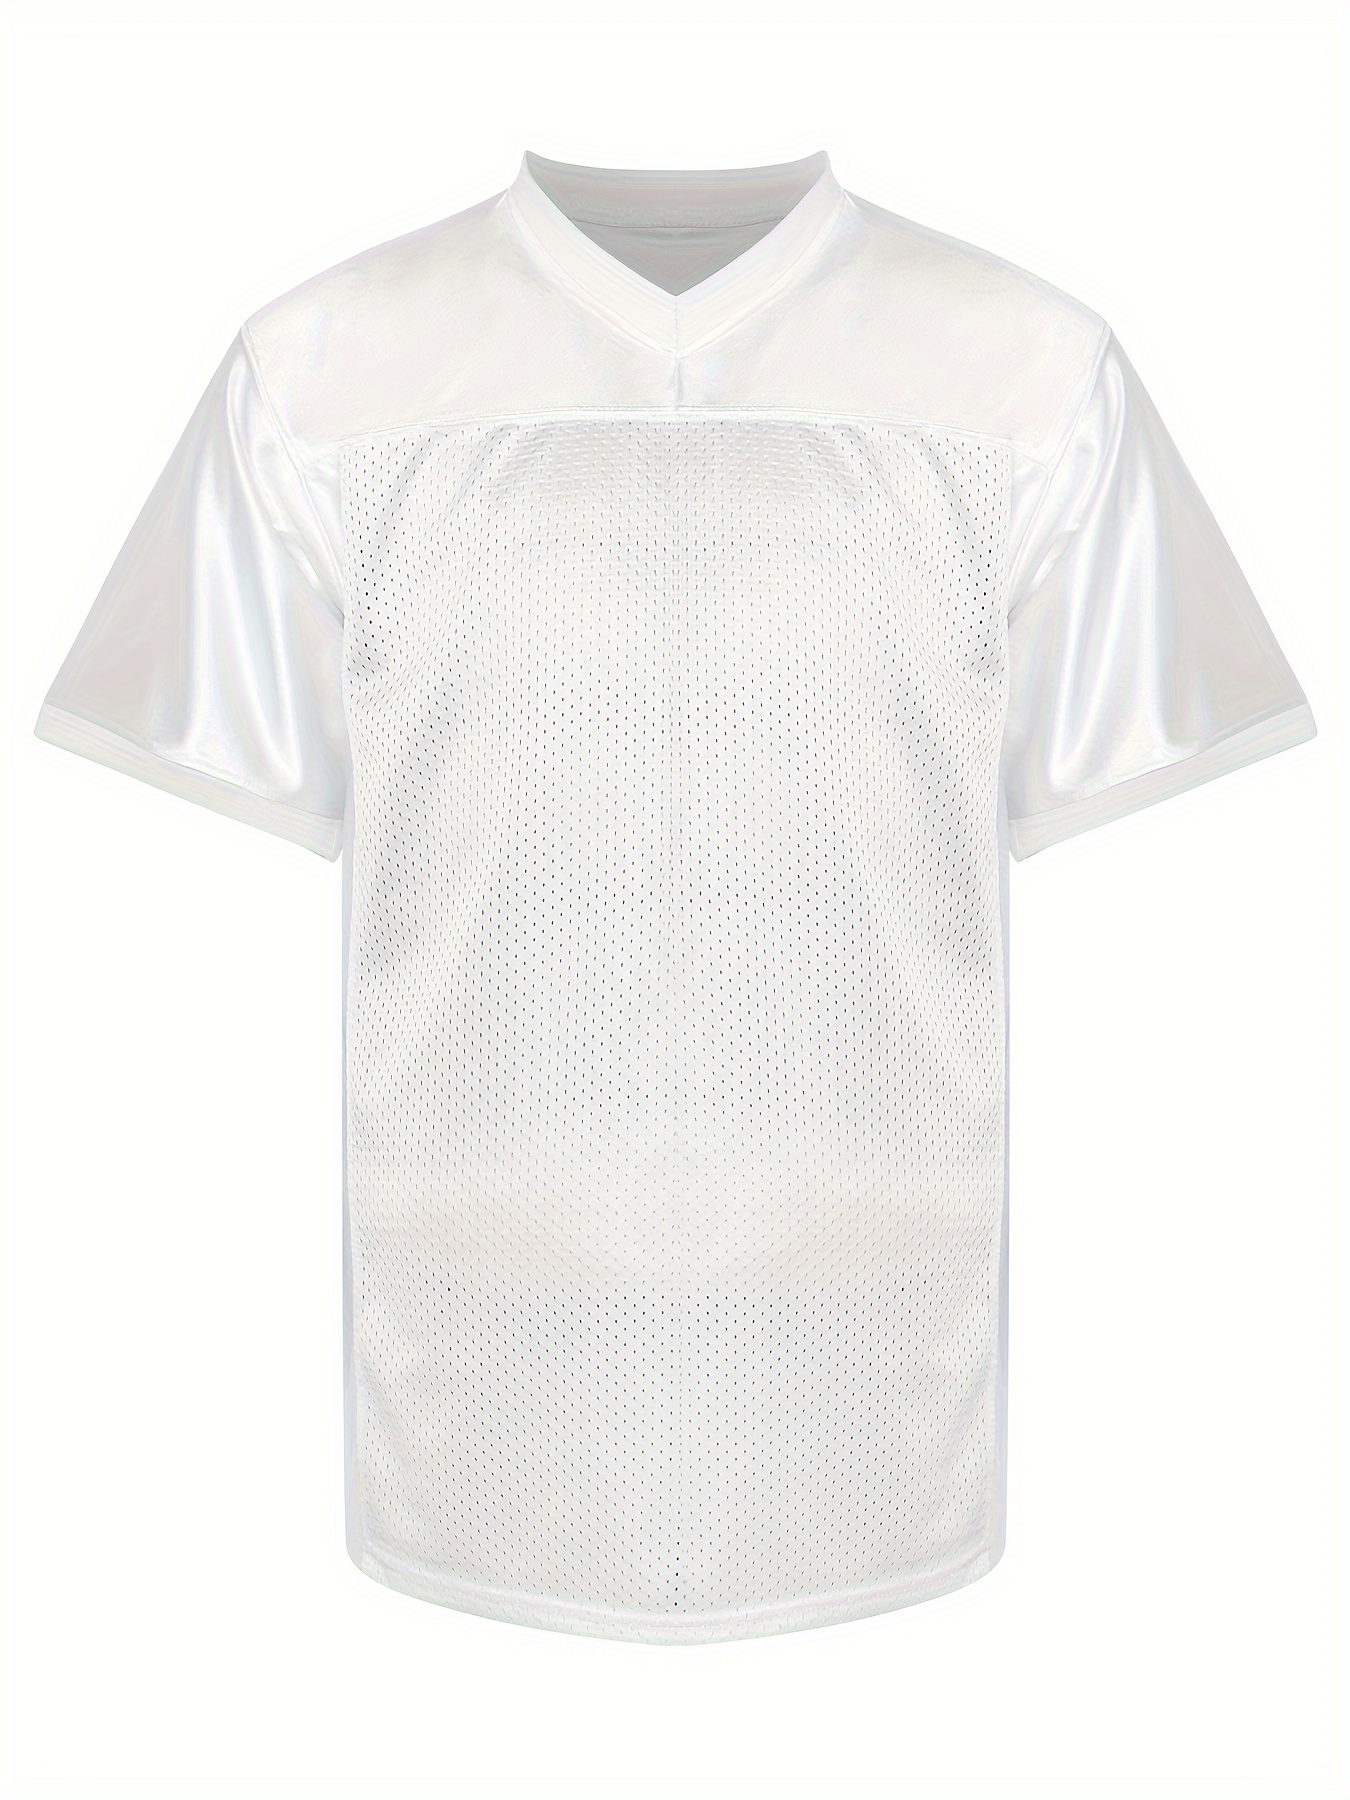 Markwort Adult Football Porthole Mesh Jersey (White, Large/X-Large)